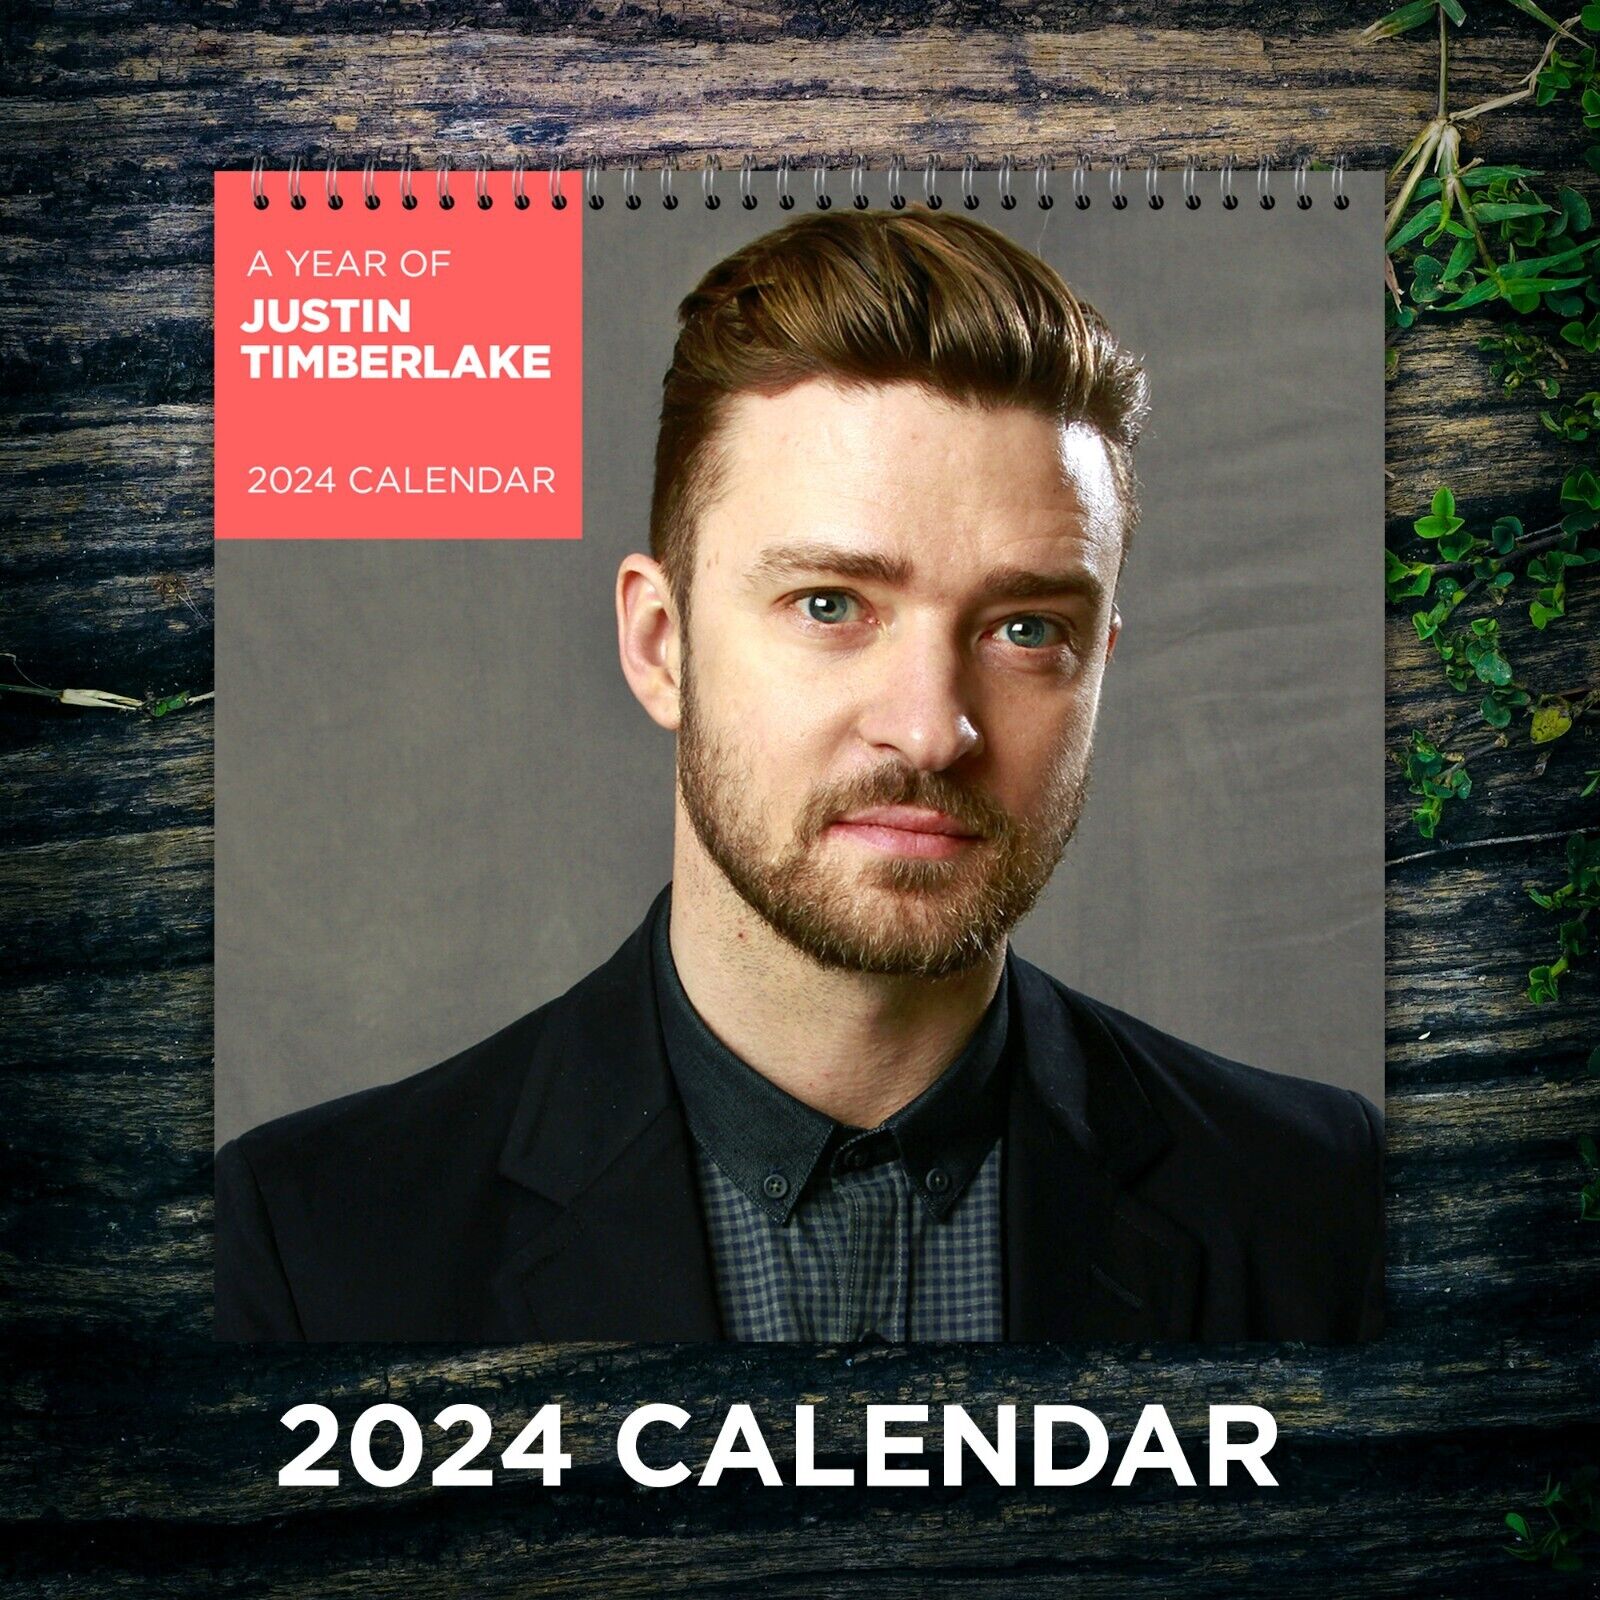 Justin Timberlake 2024 Images - Faun Oralle